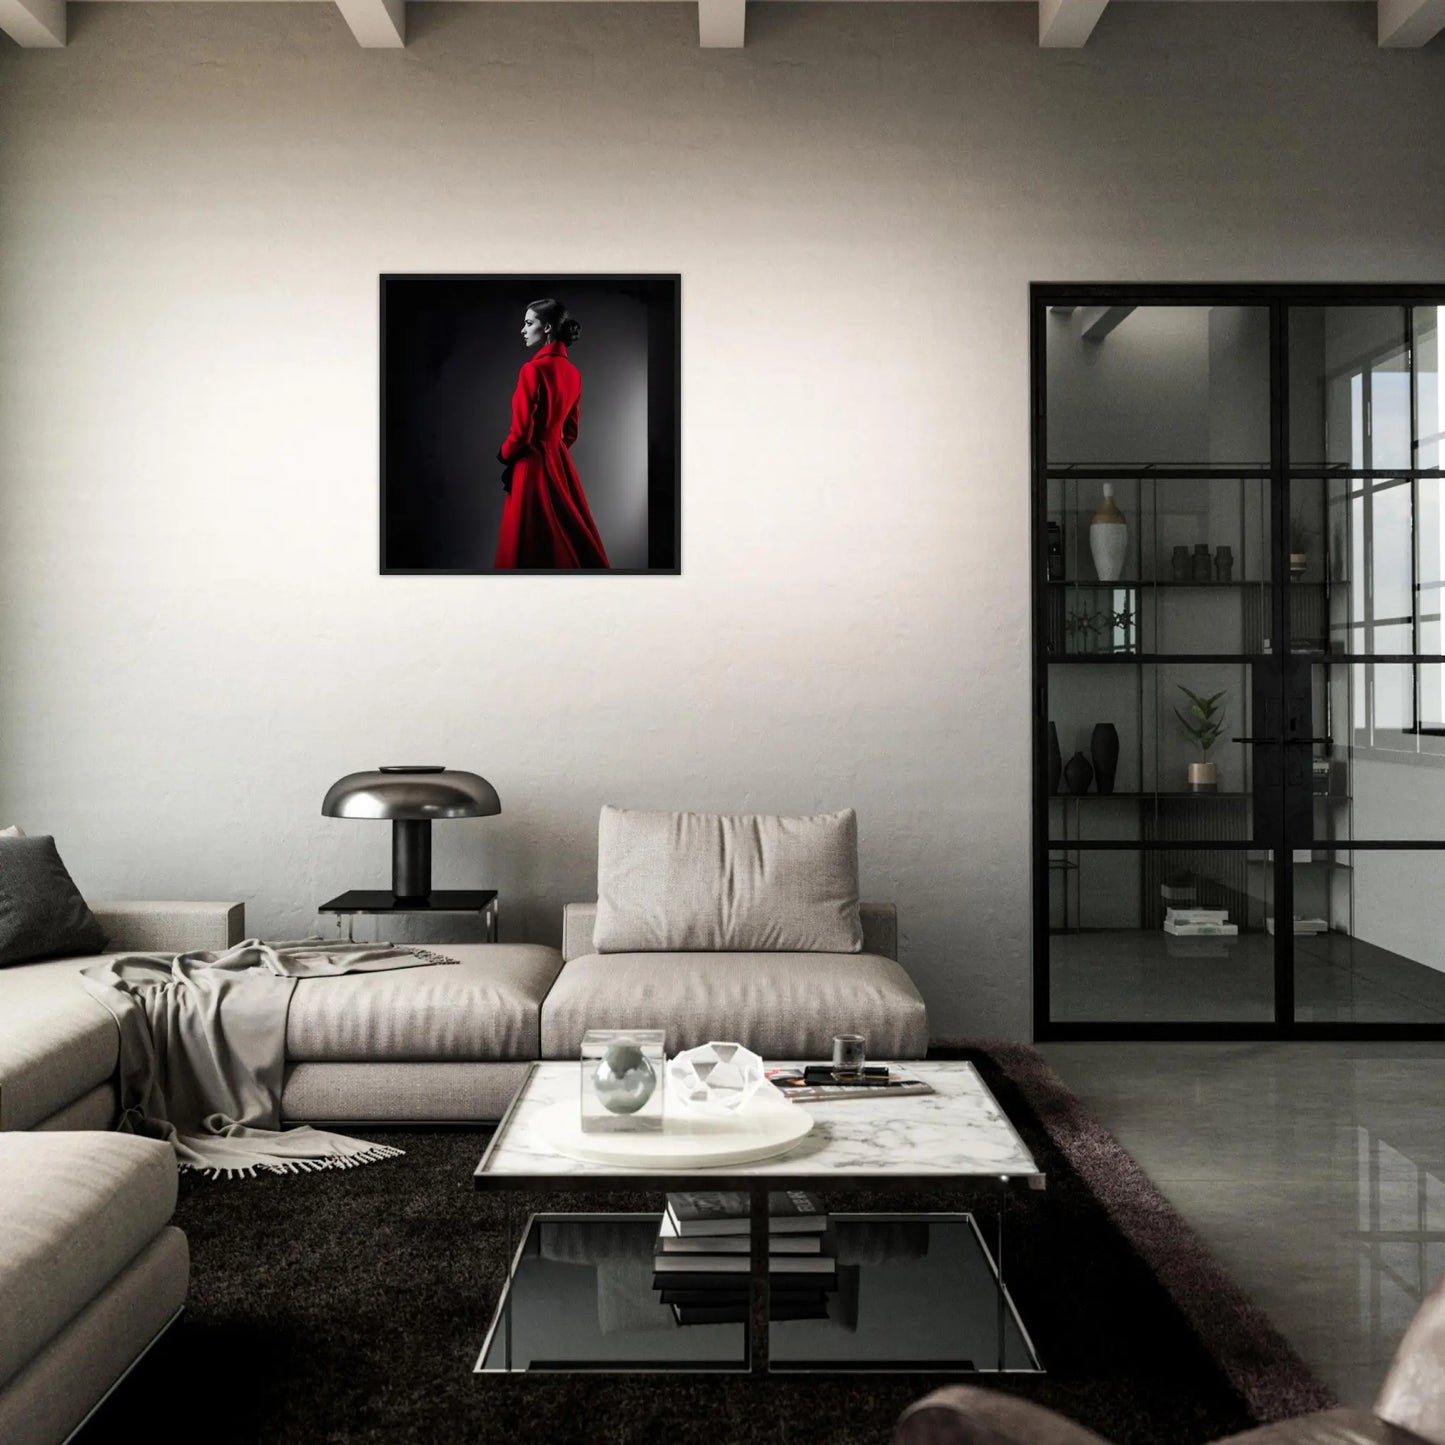 Gerahmtes Premium-Poster - Frau im roten Mantel - Schwarz-Weiß, KI-Kunst - RolConArt, Schwarz-Weiß mit Akzentfarben, 